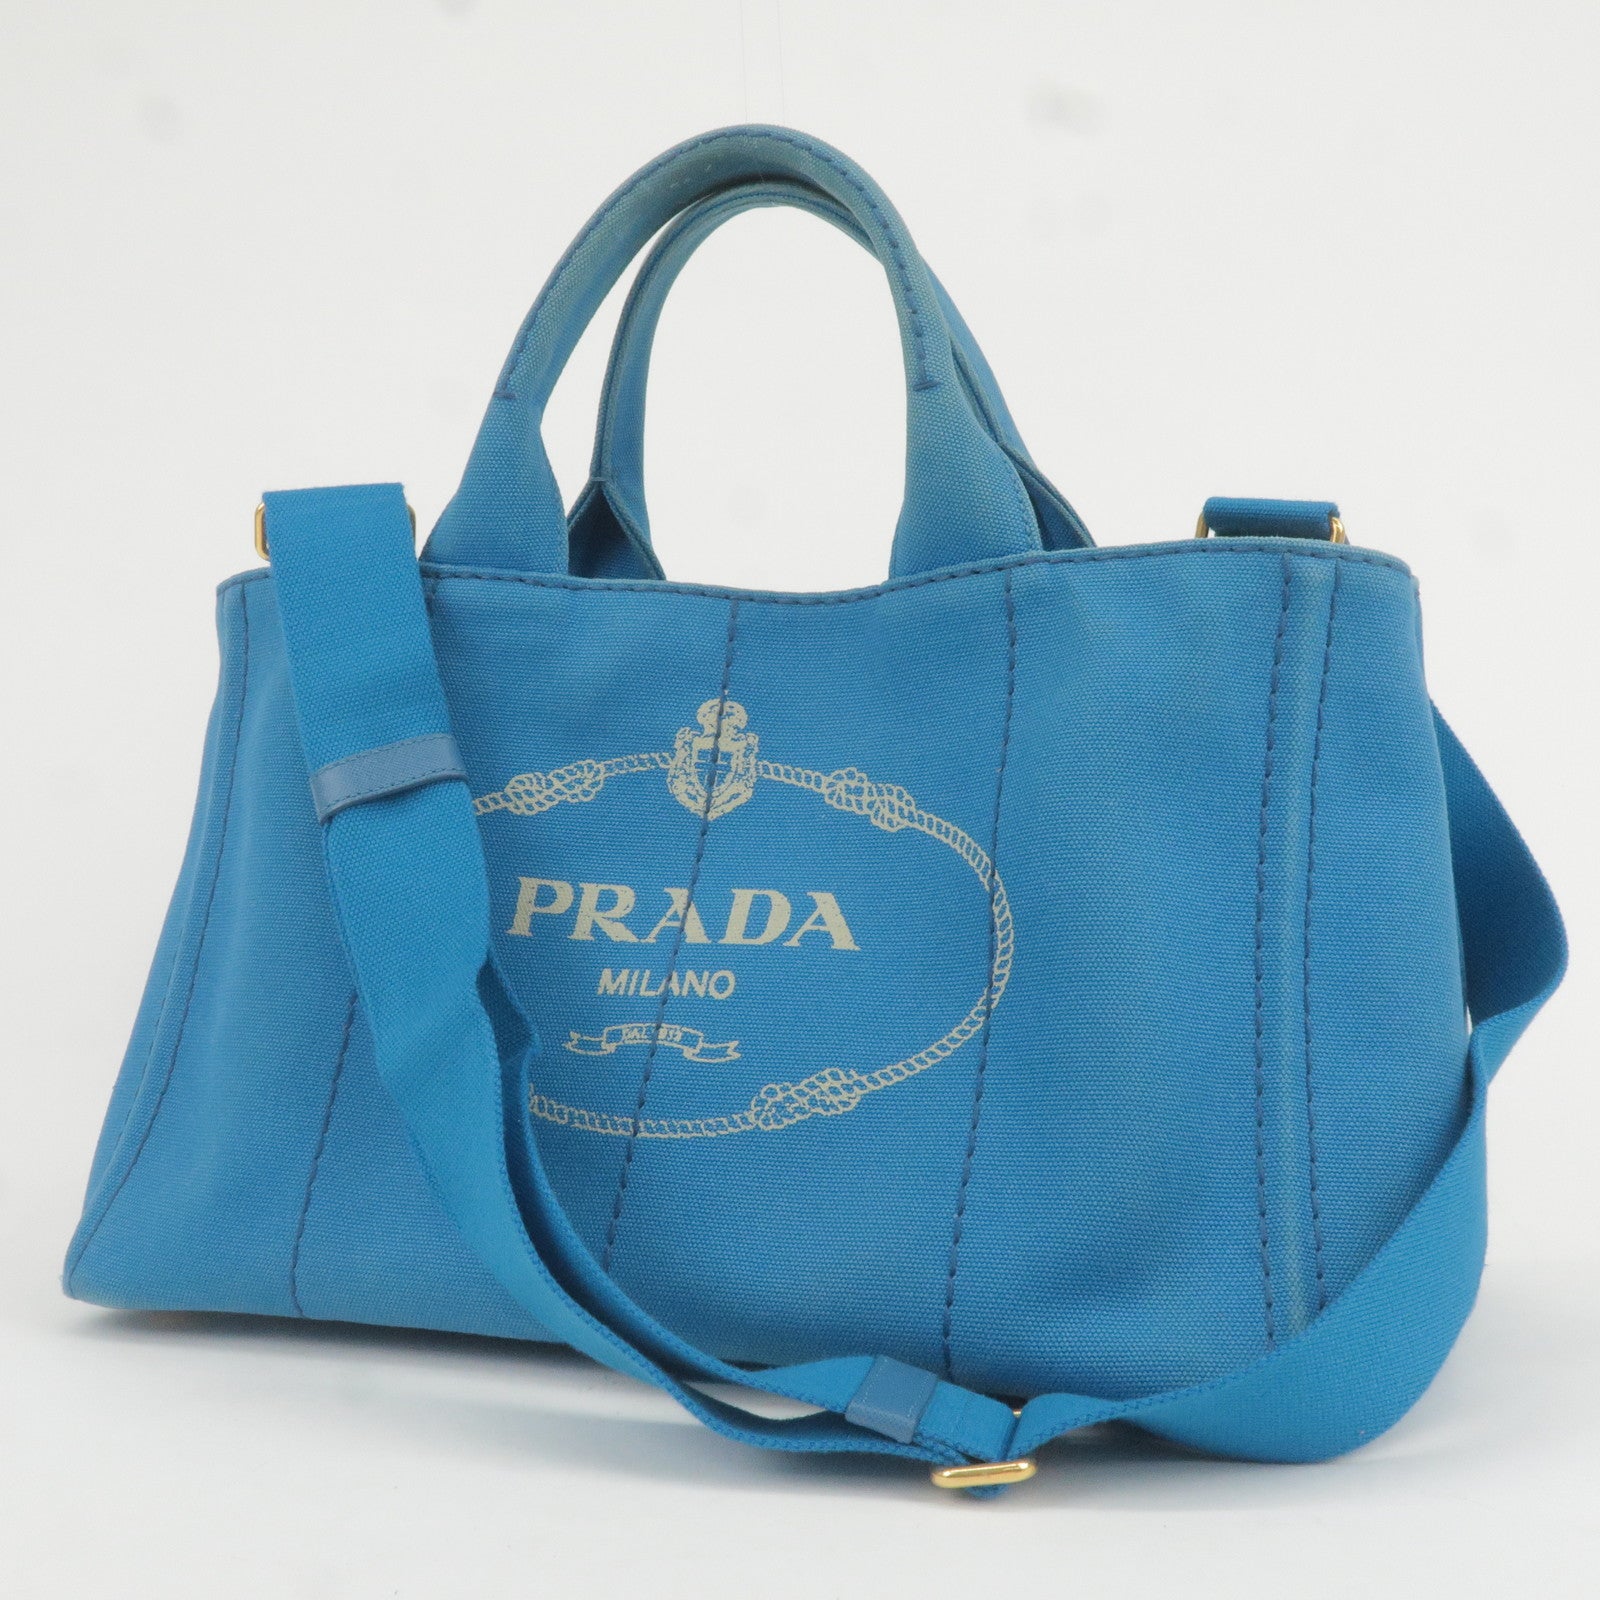 Prada 872320 Blue Bicolor Galleria Tote with Strap 2way